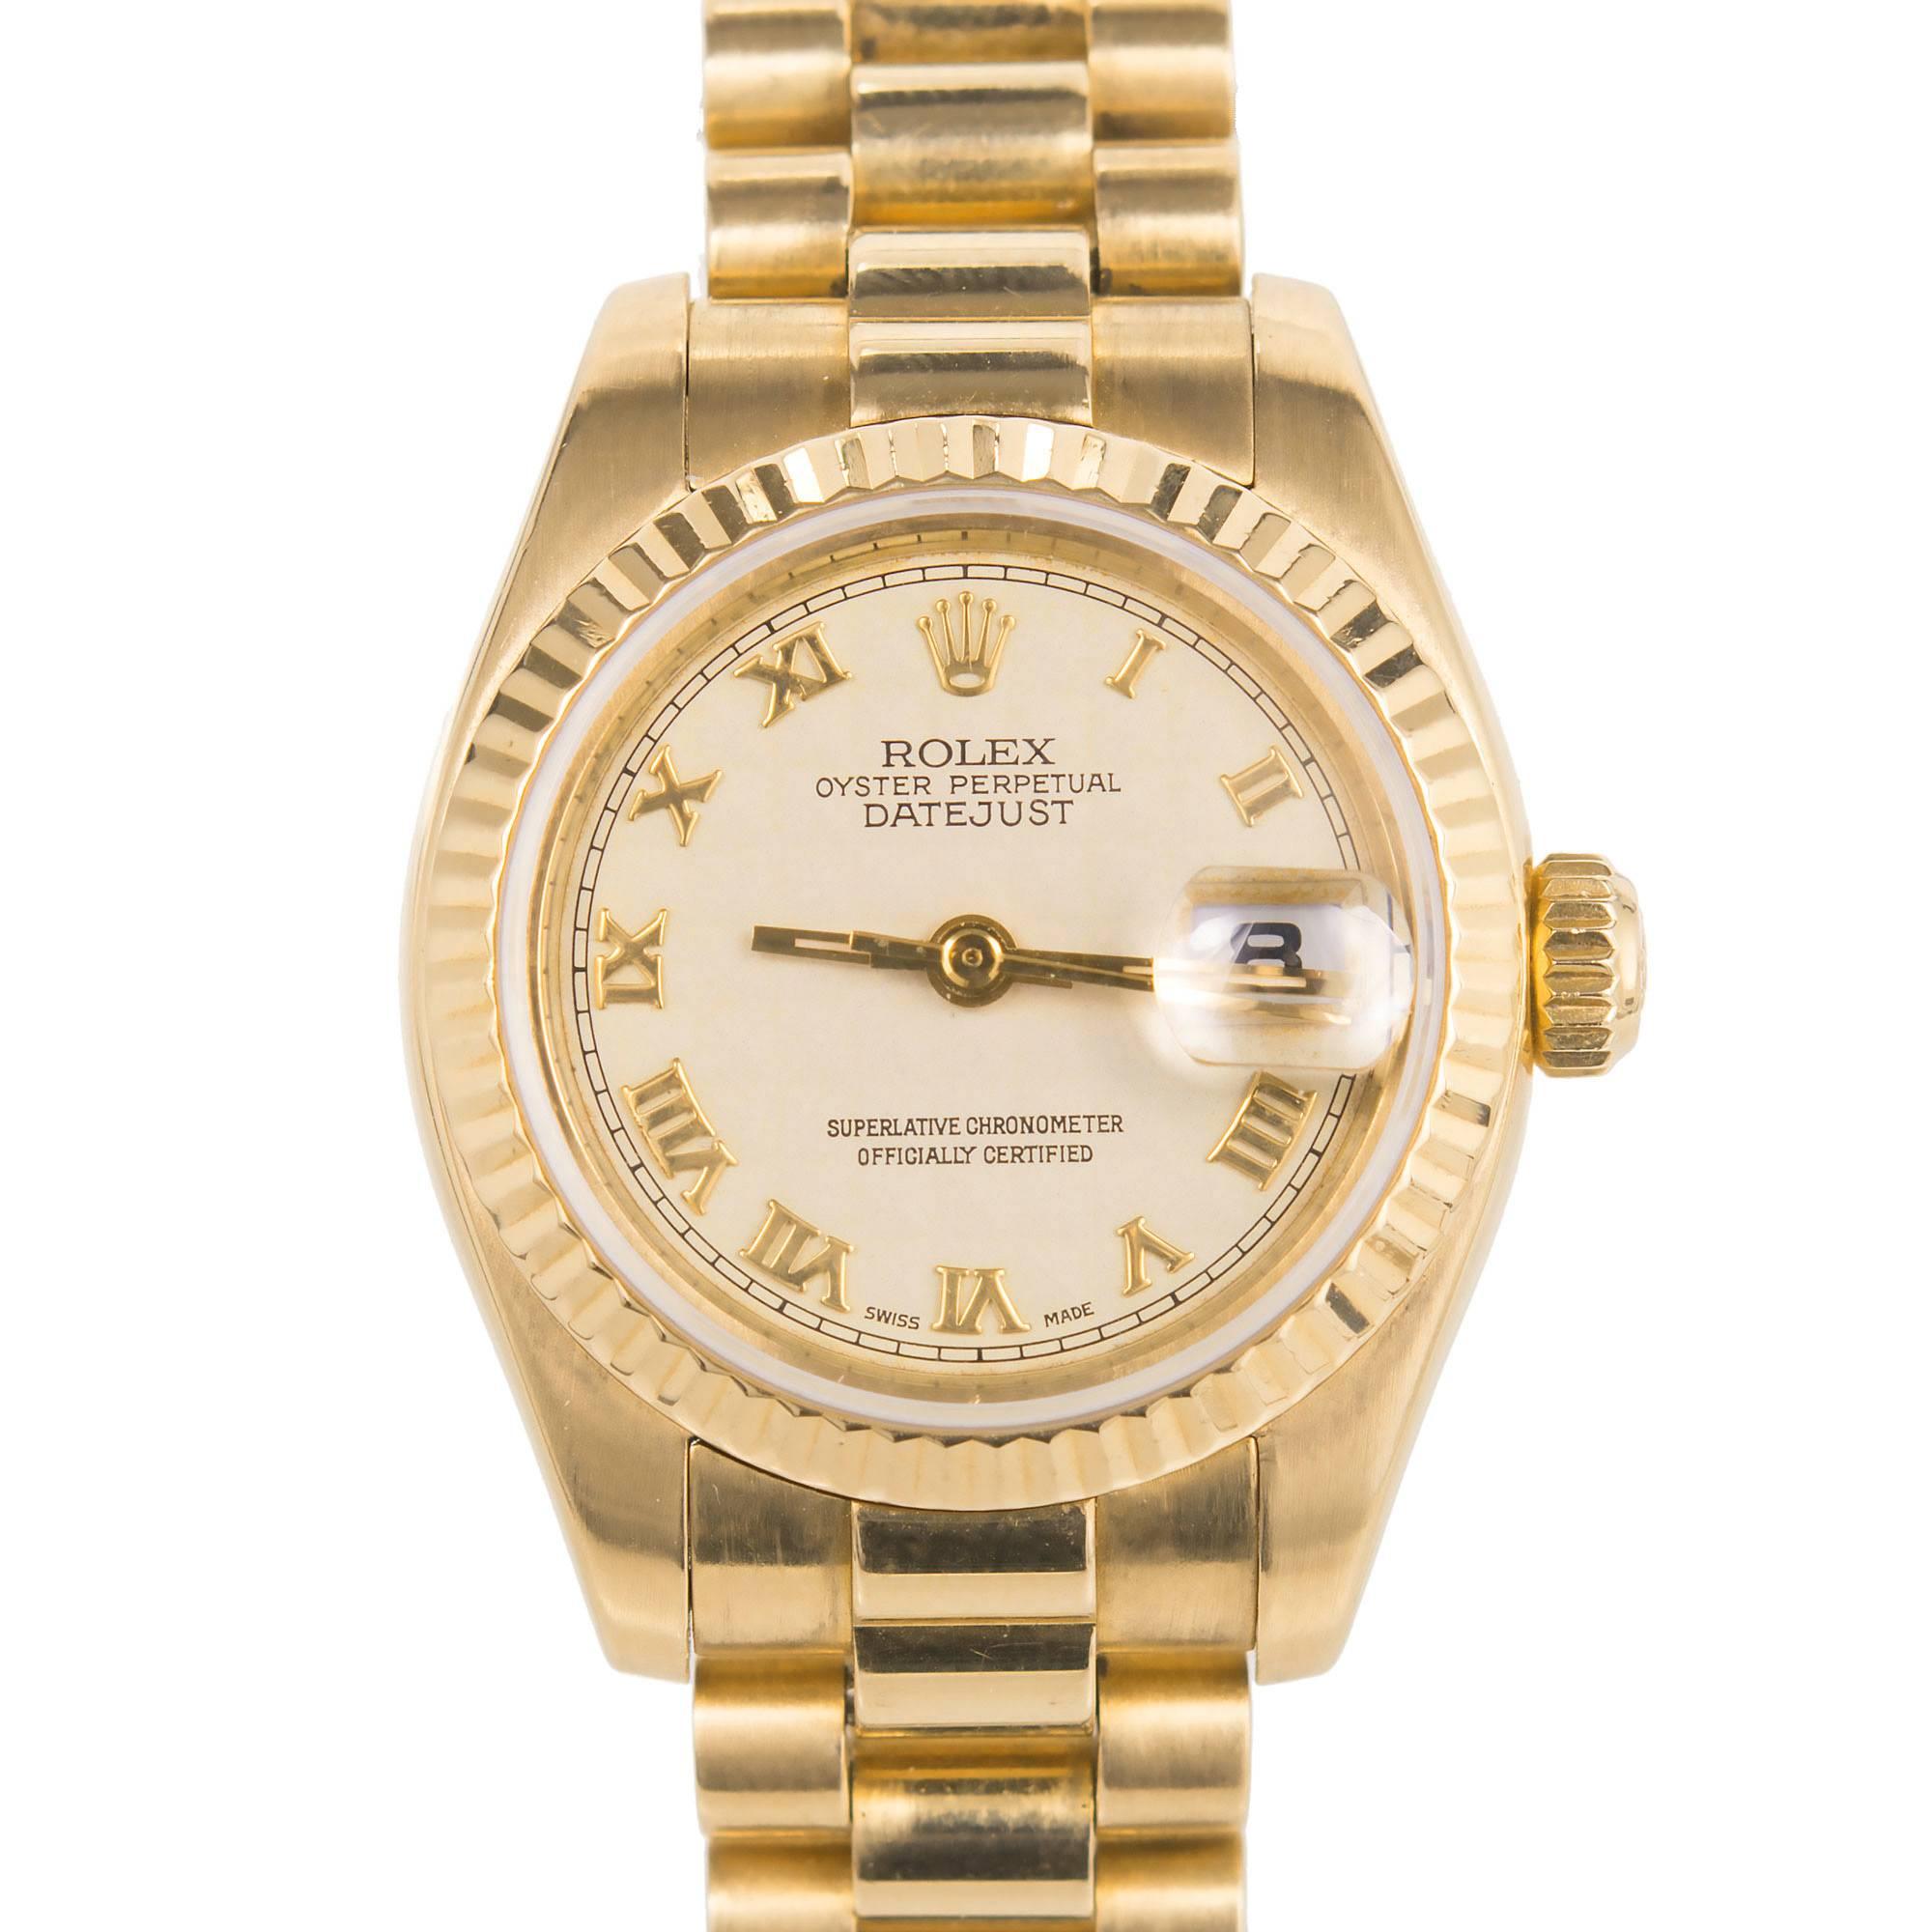 Montre-bracelet Datejust en or jaune pour dame Rolex Réf. 179178, année 2002